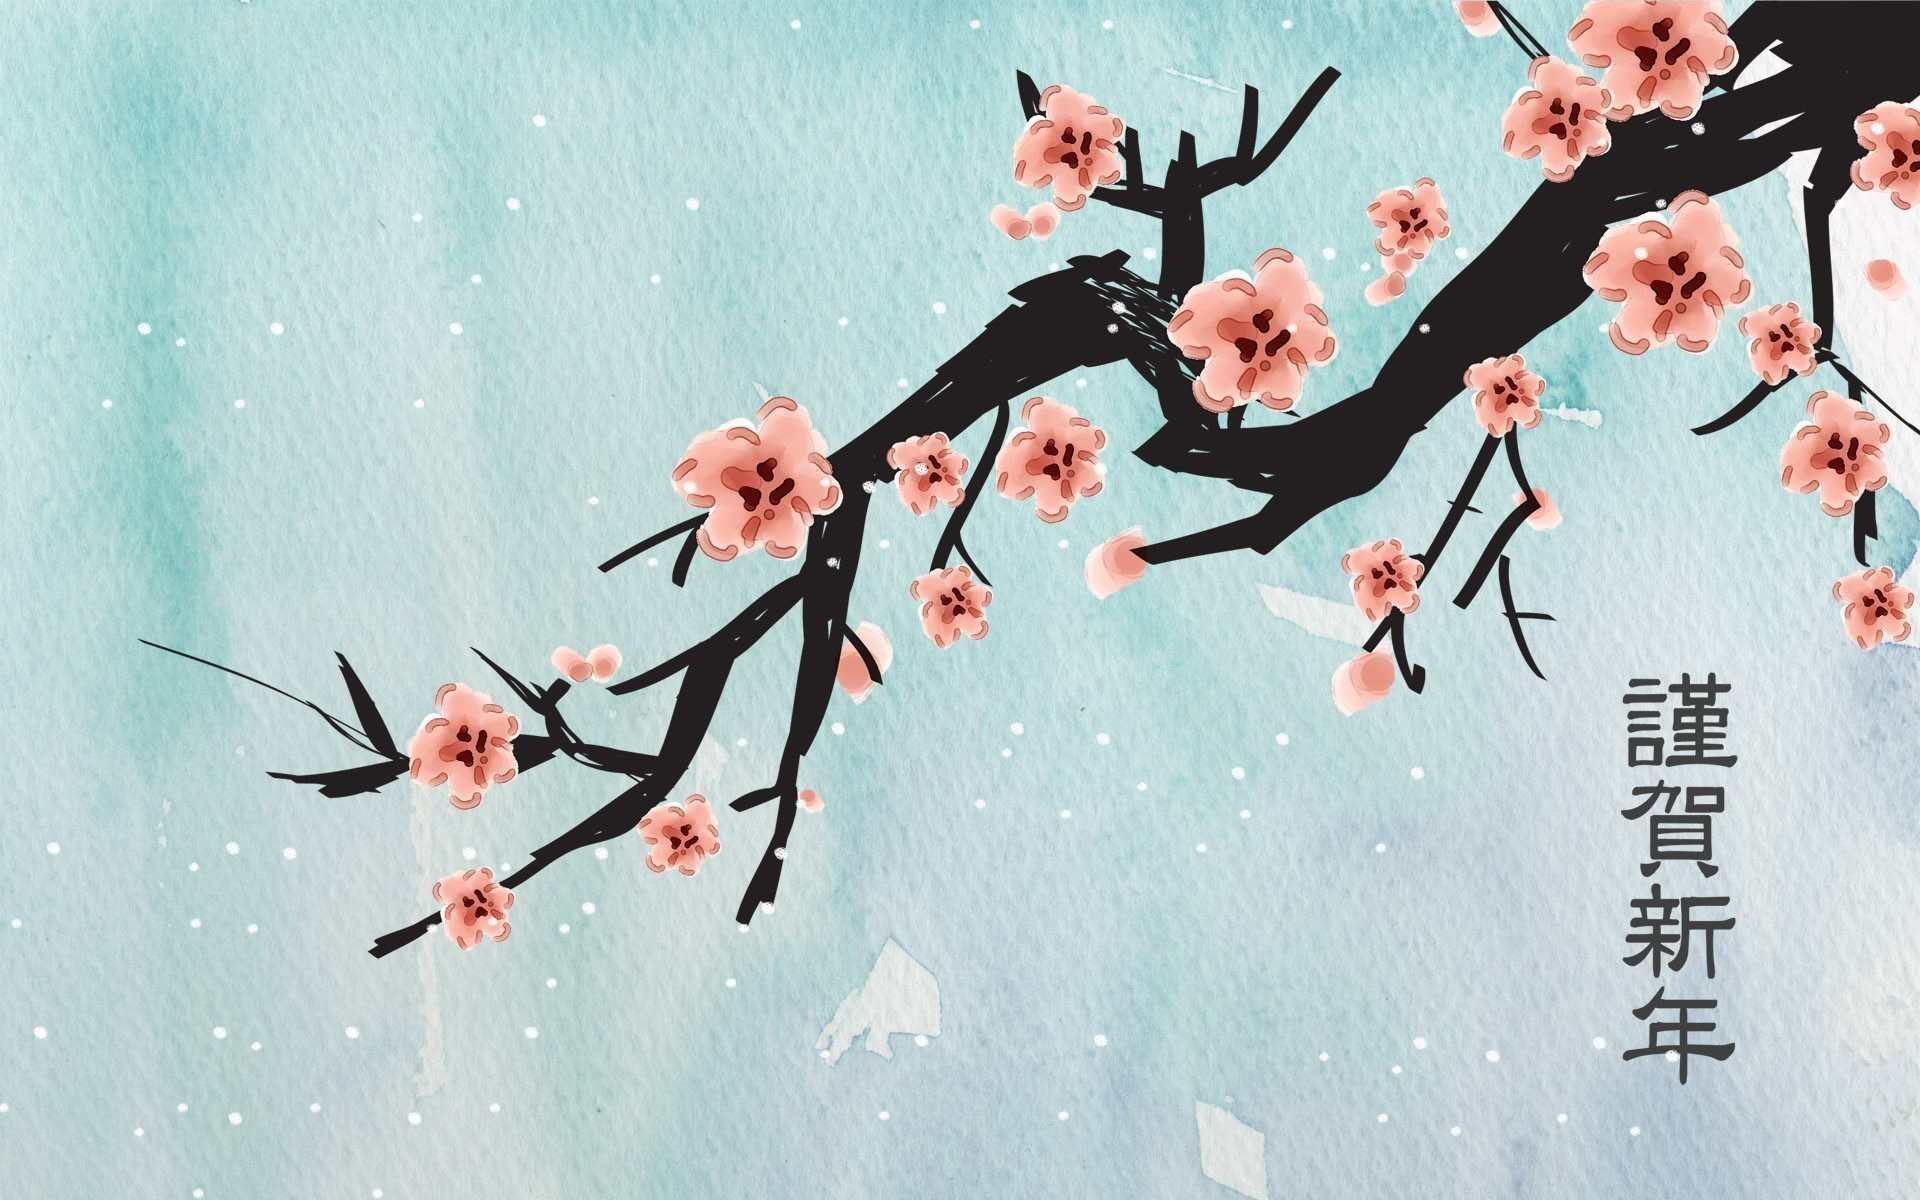 Traditional Japanese Art Wallpaper Phone - Uncalke.com